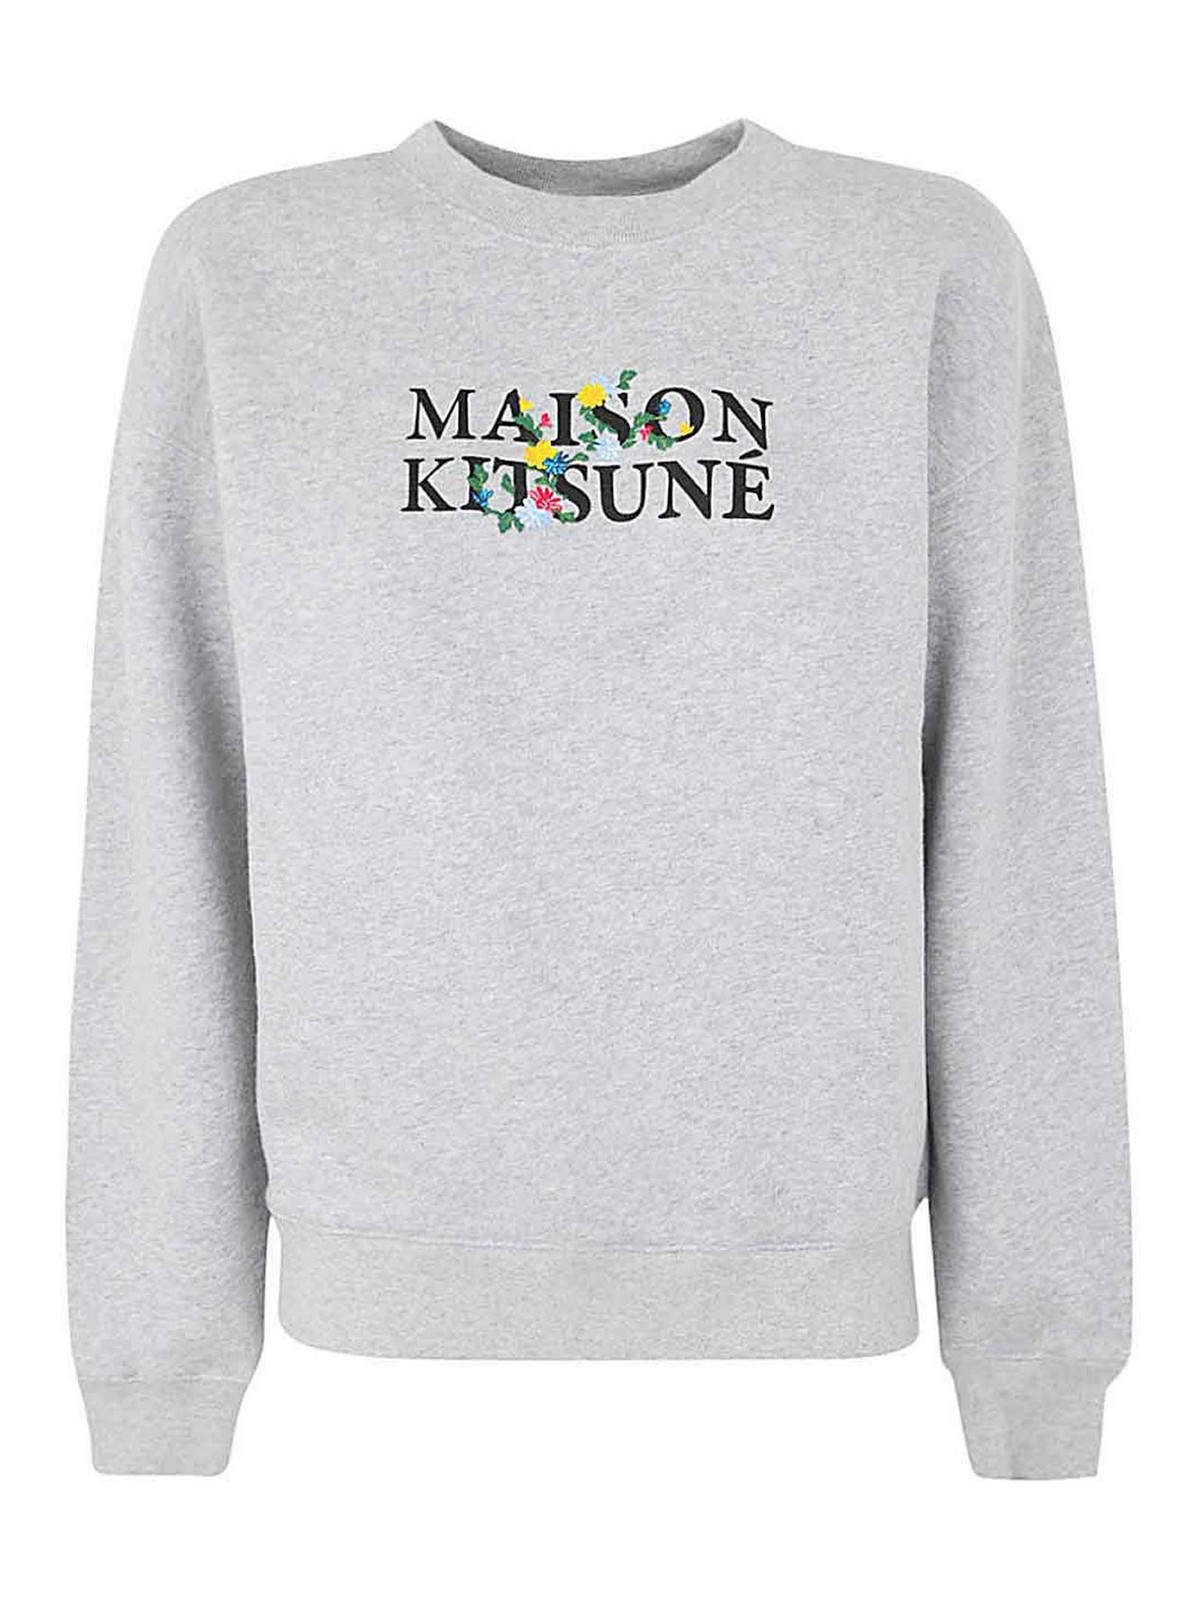 Maison kitsune flowers comfort sweatshirt